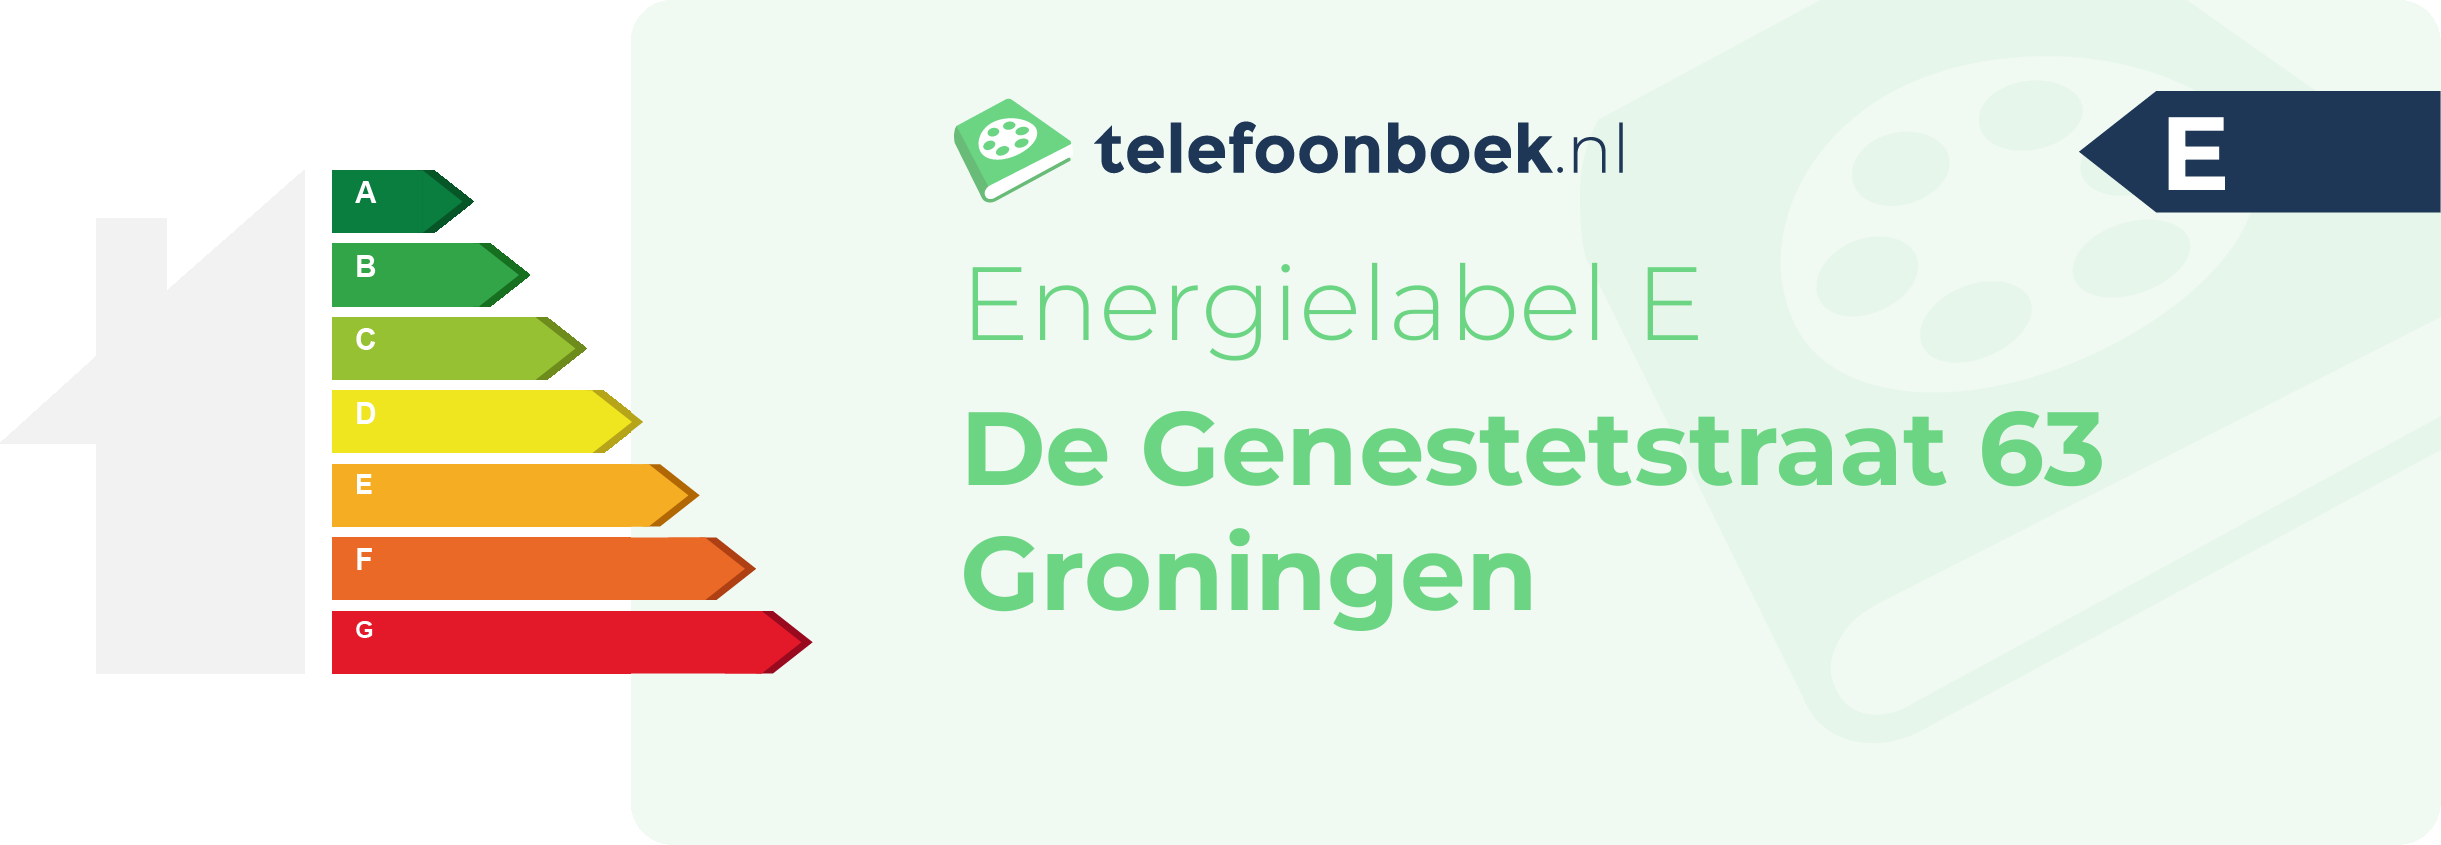 Energielabel De Genestetstraat 63 Groningen